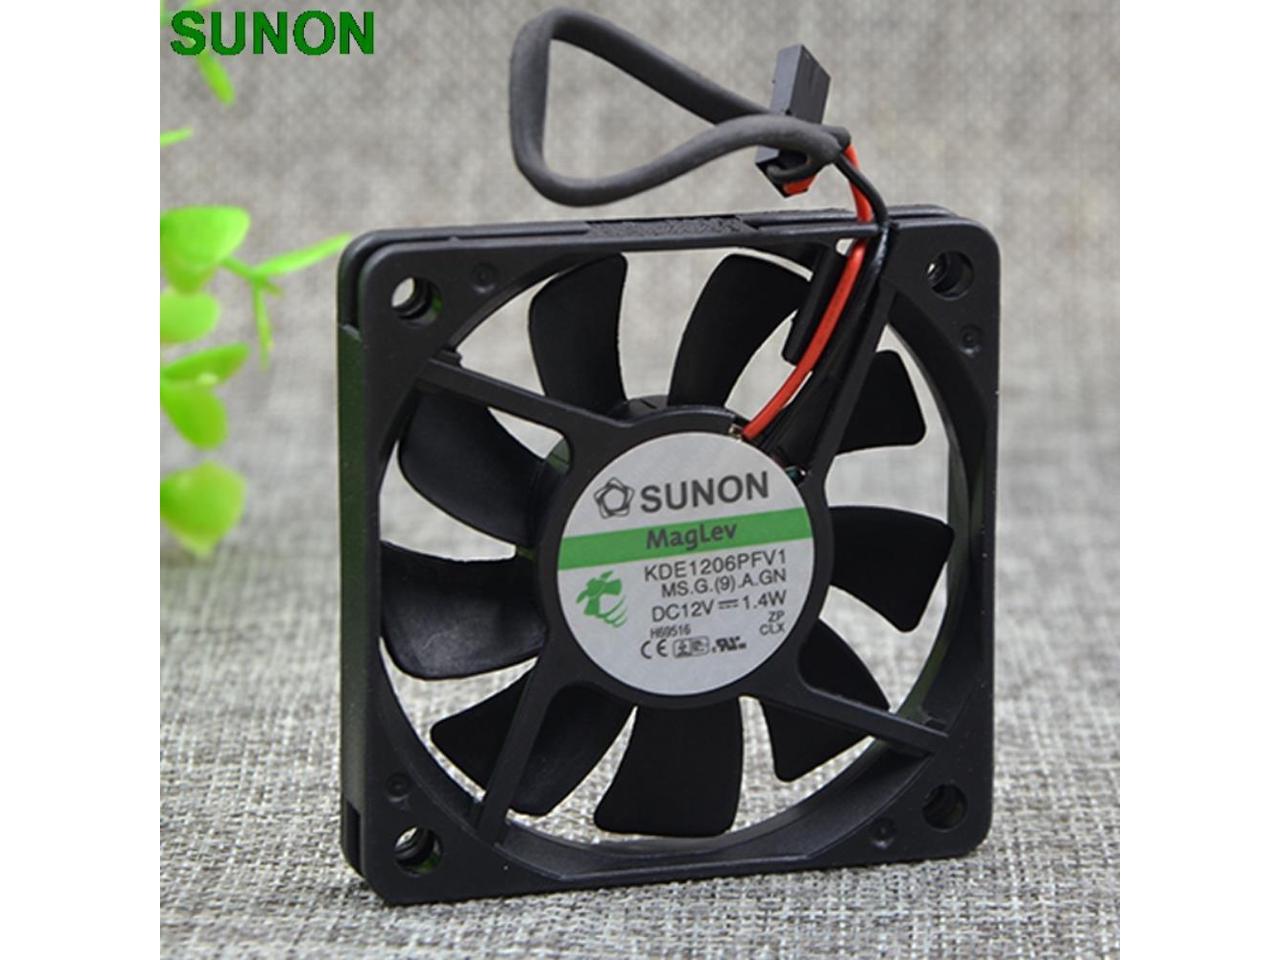 For SUNON KDE1206PFV1 Fan 60*60*10mm 12V 1.4W 3Pin 